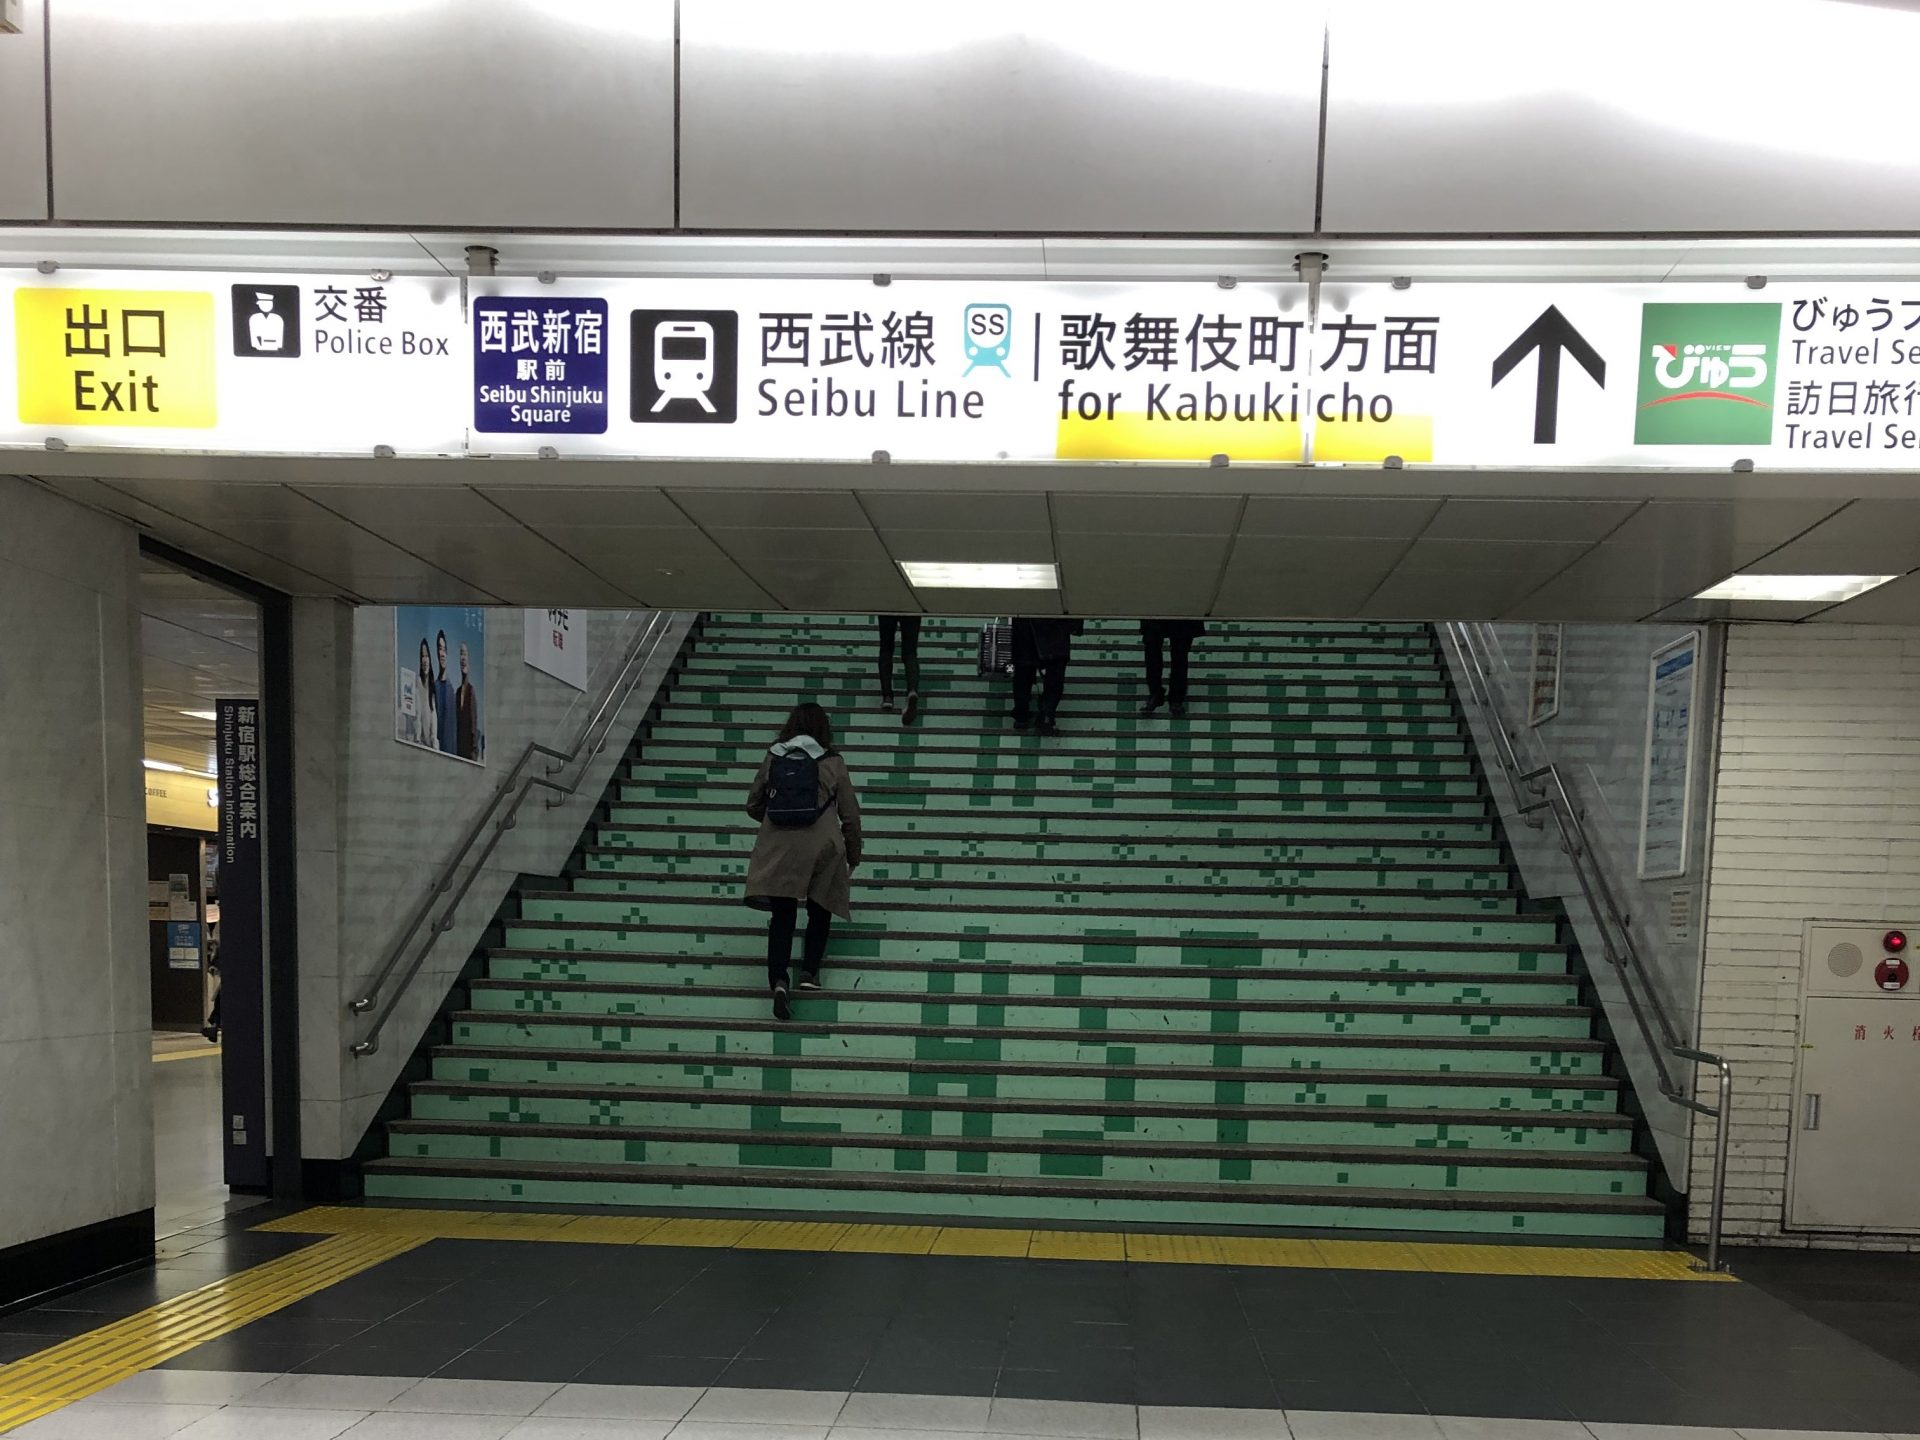 ビジネスエアポート新宿三丁目 JR東口改札より歌舞伎町方面の階段で地上へ出る